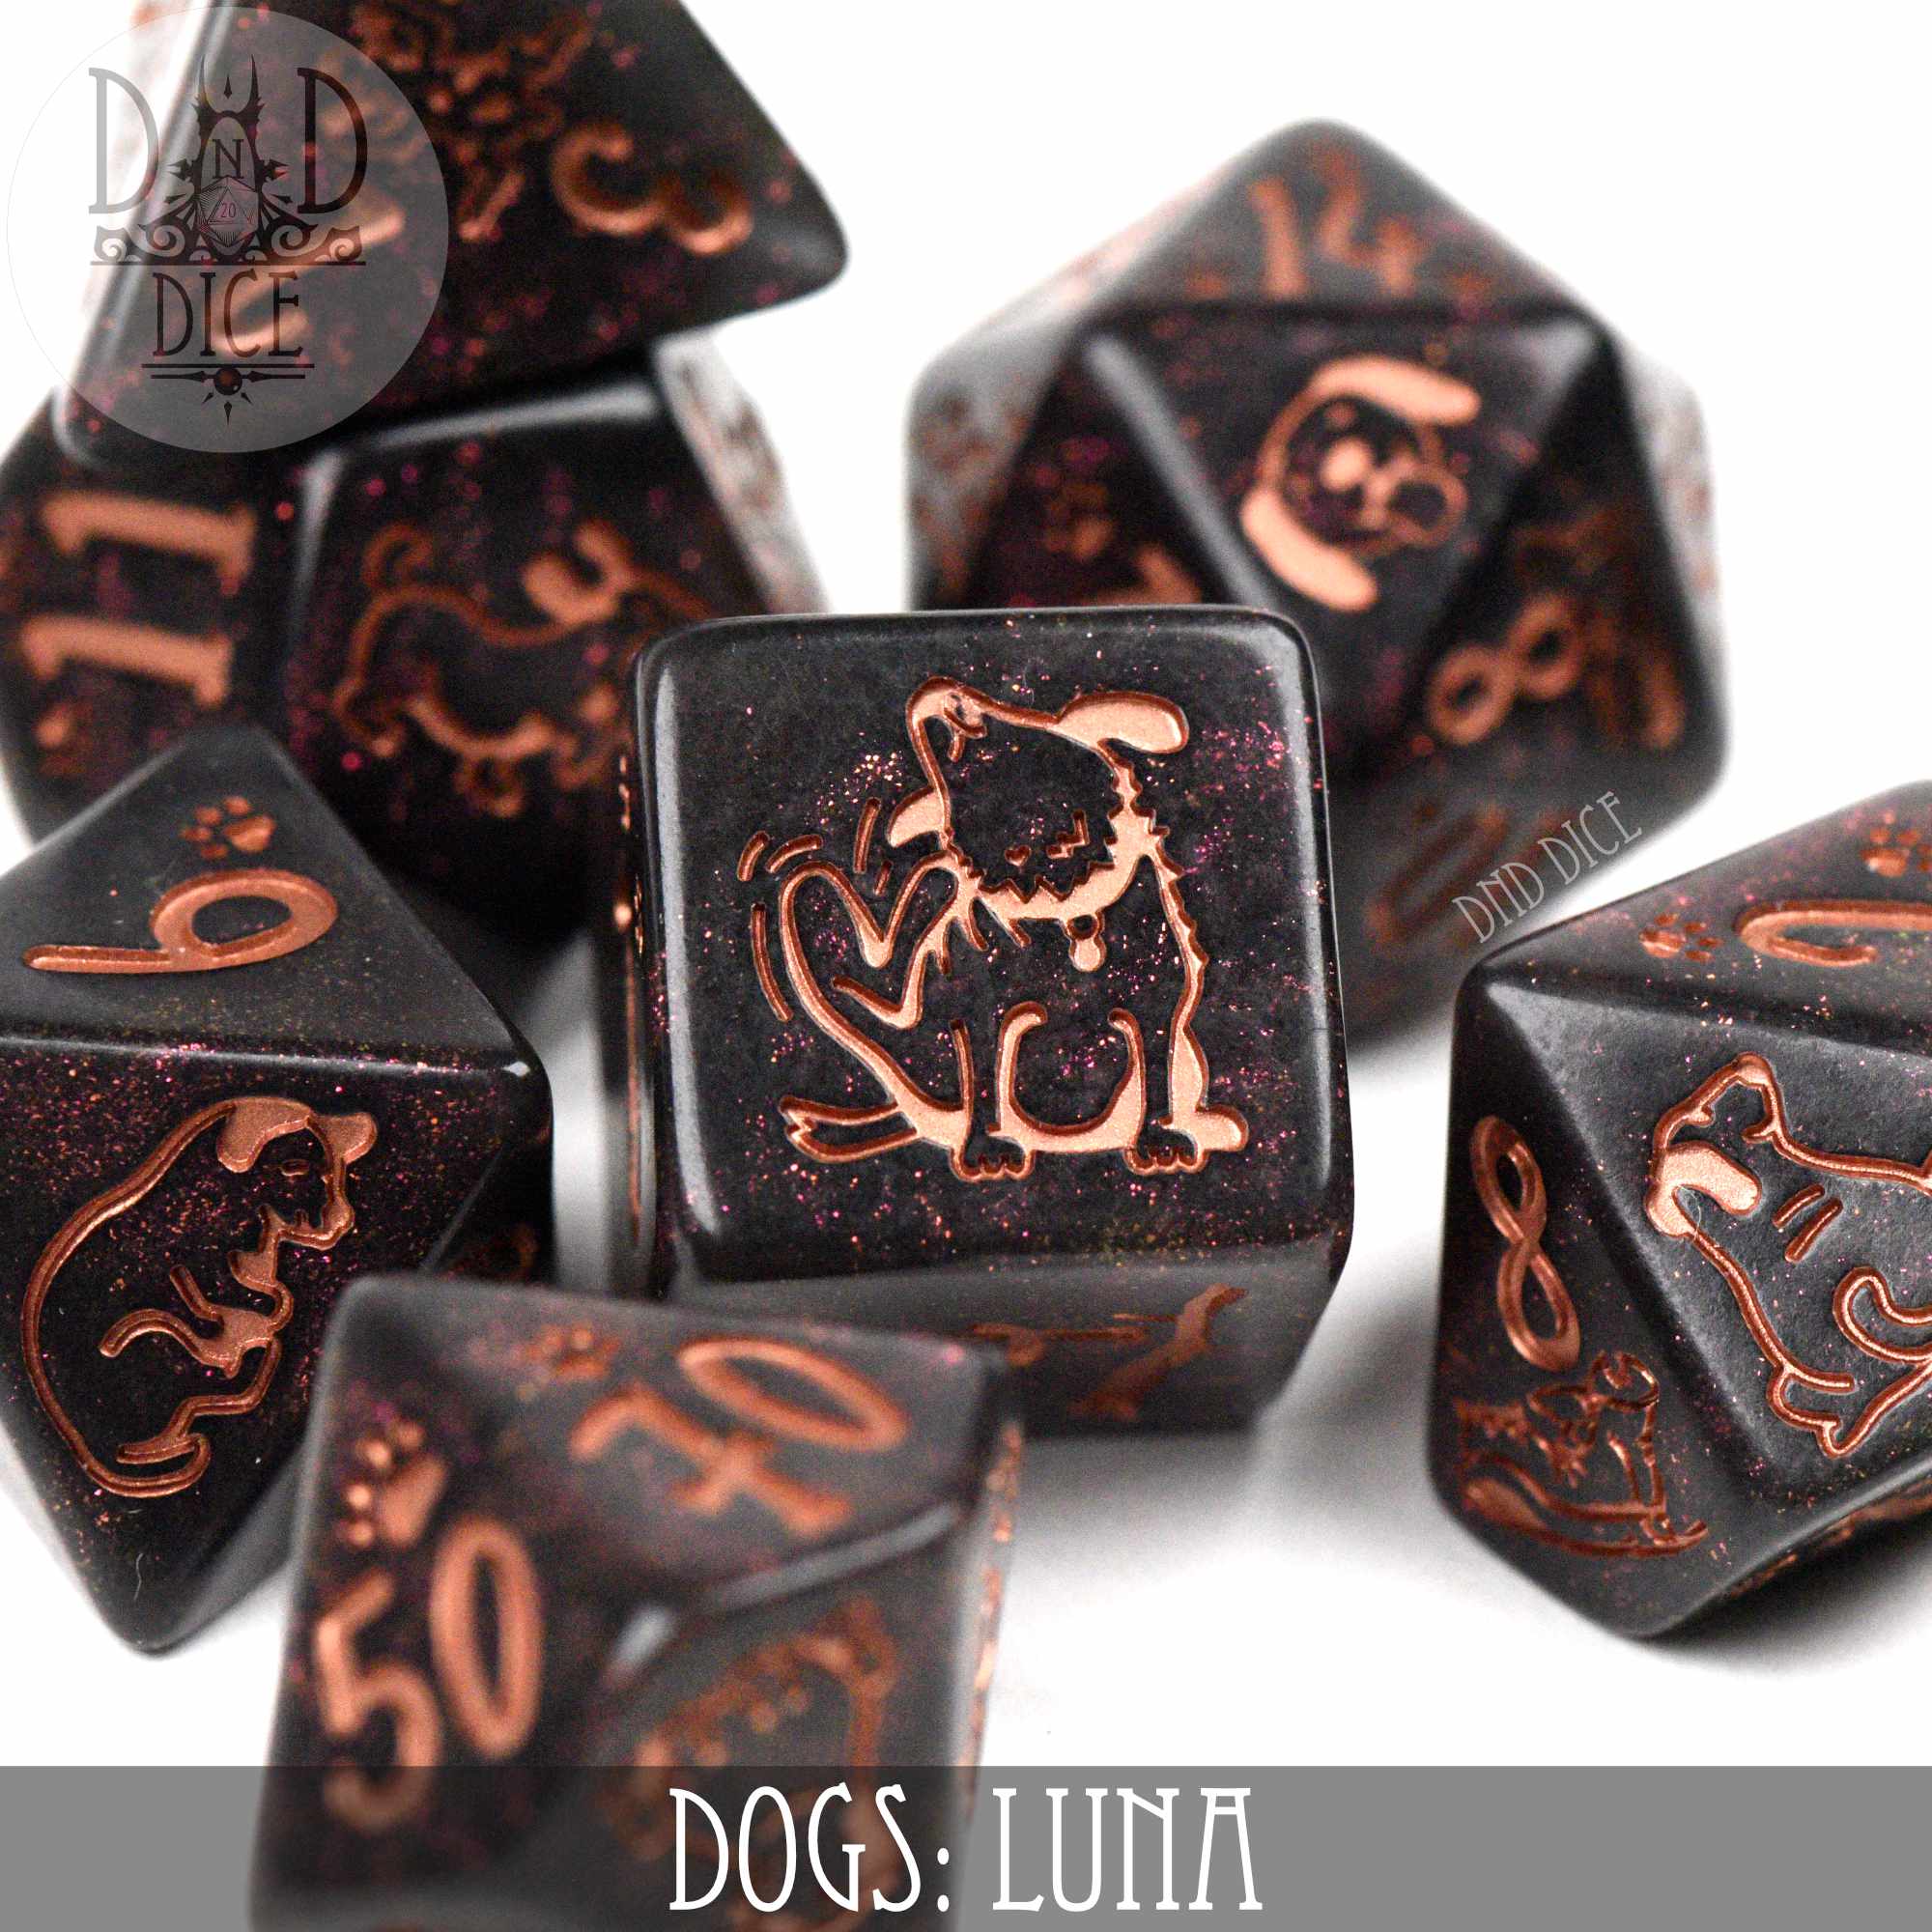 Dogs: Luna Dice Set